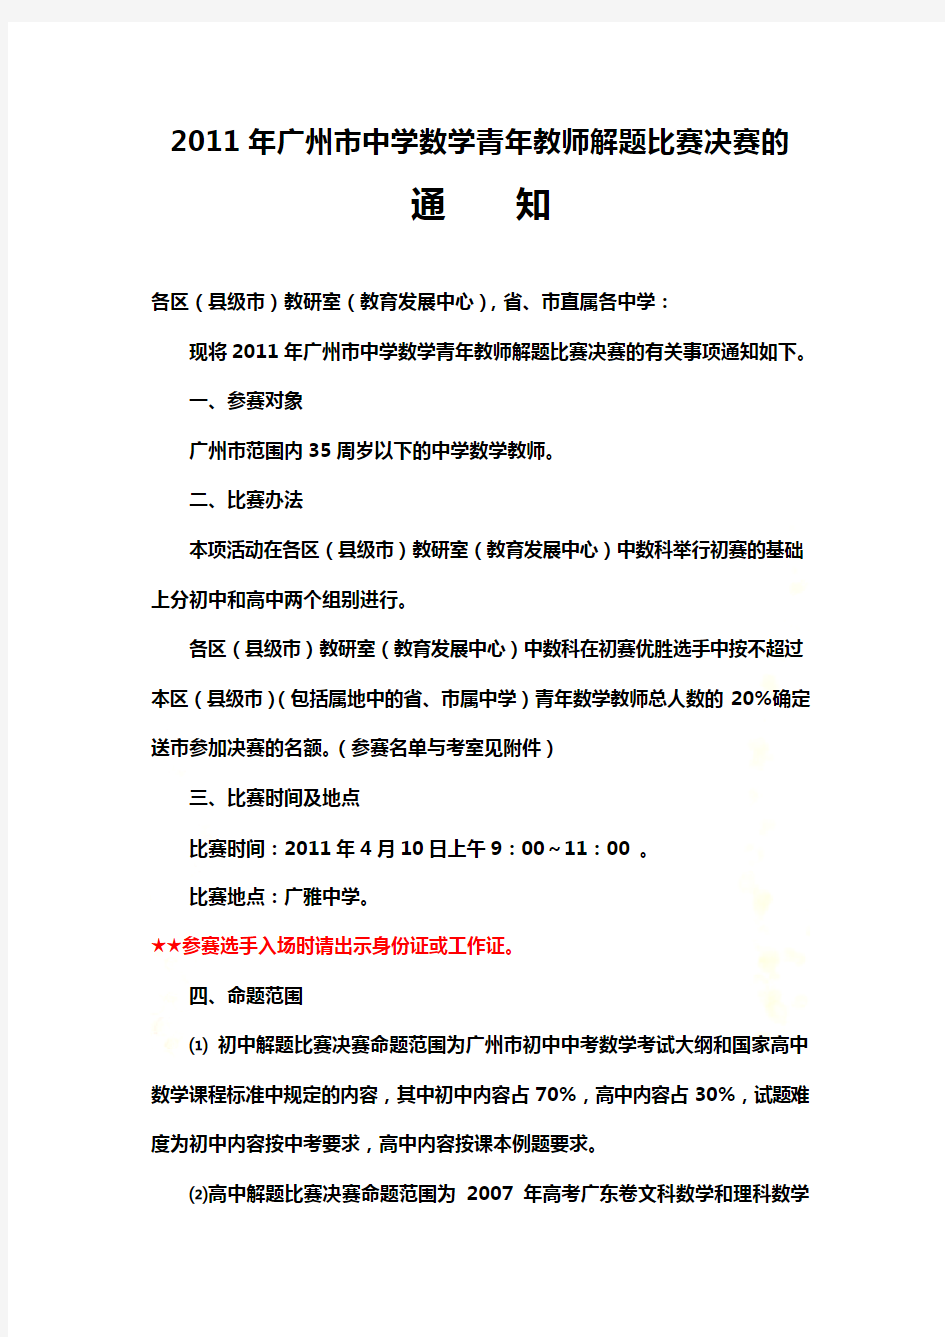 关于2005年广州市中学数学青年教师解题比赛的通知